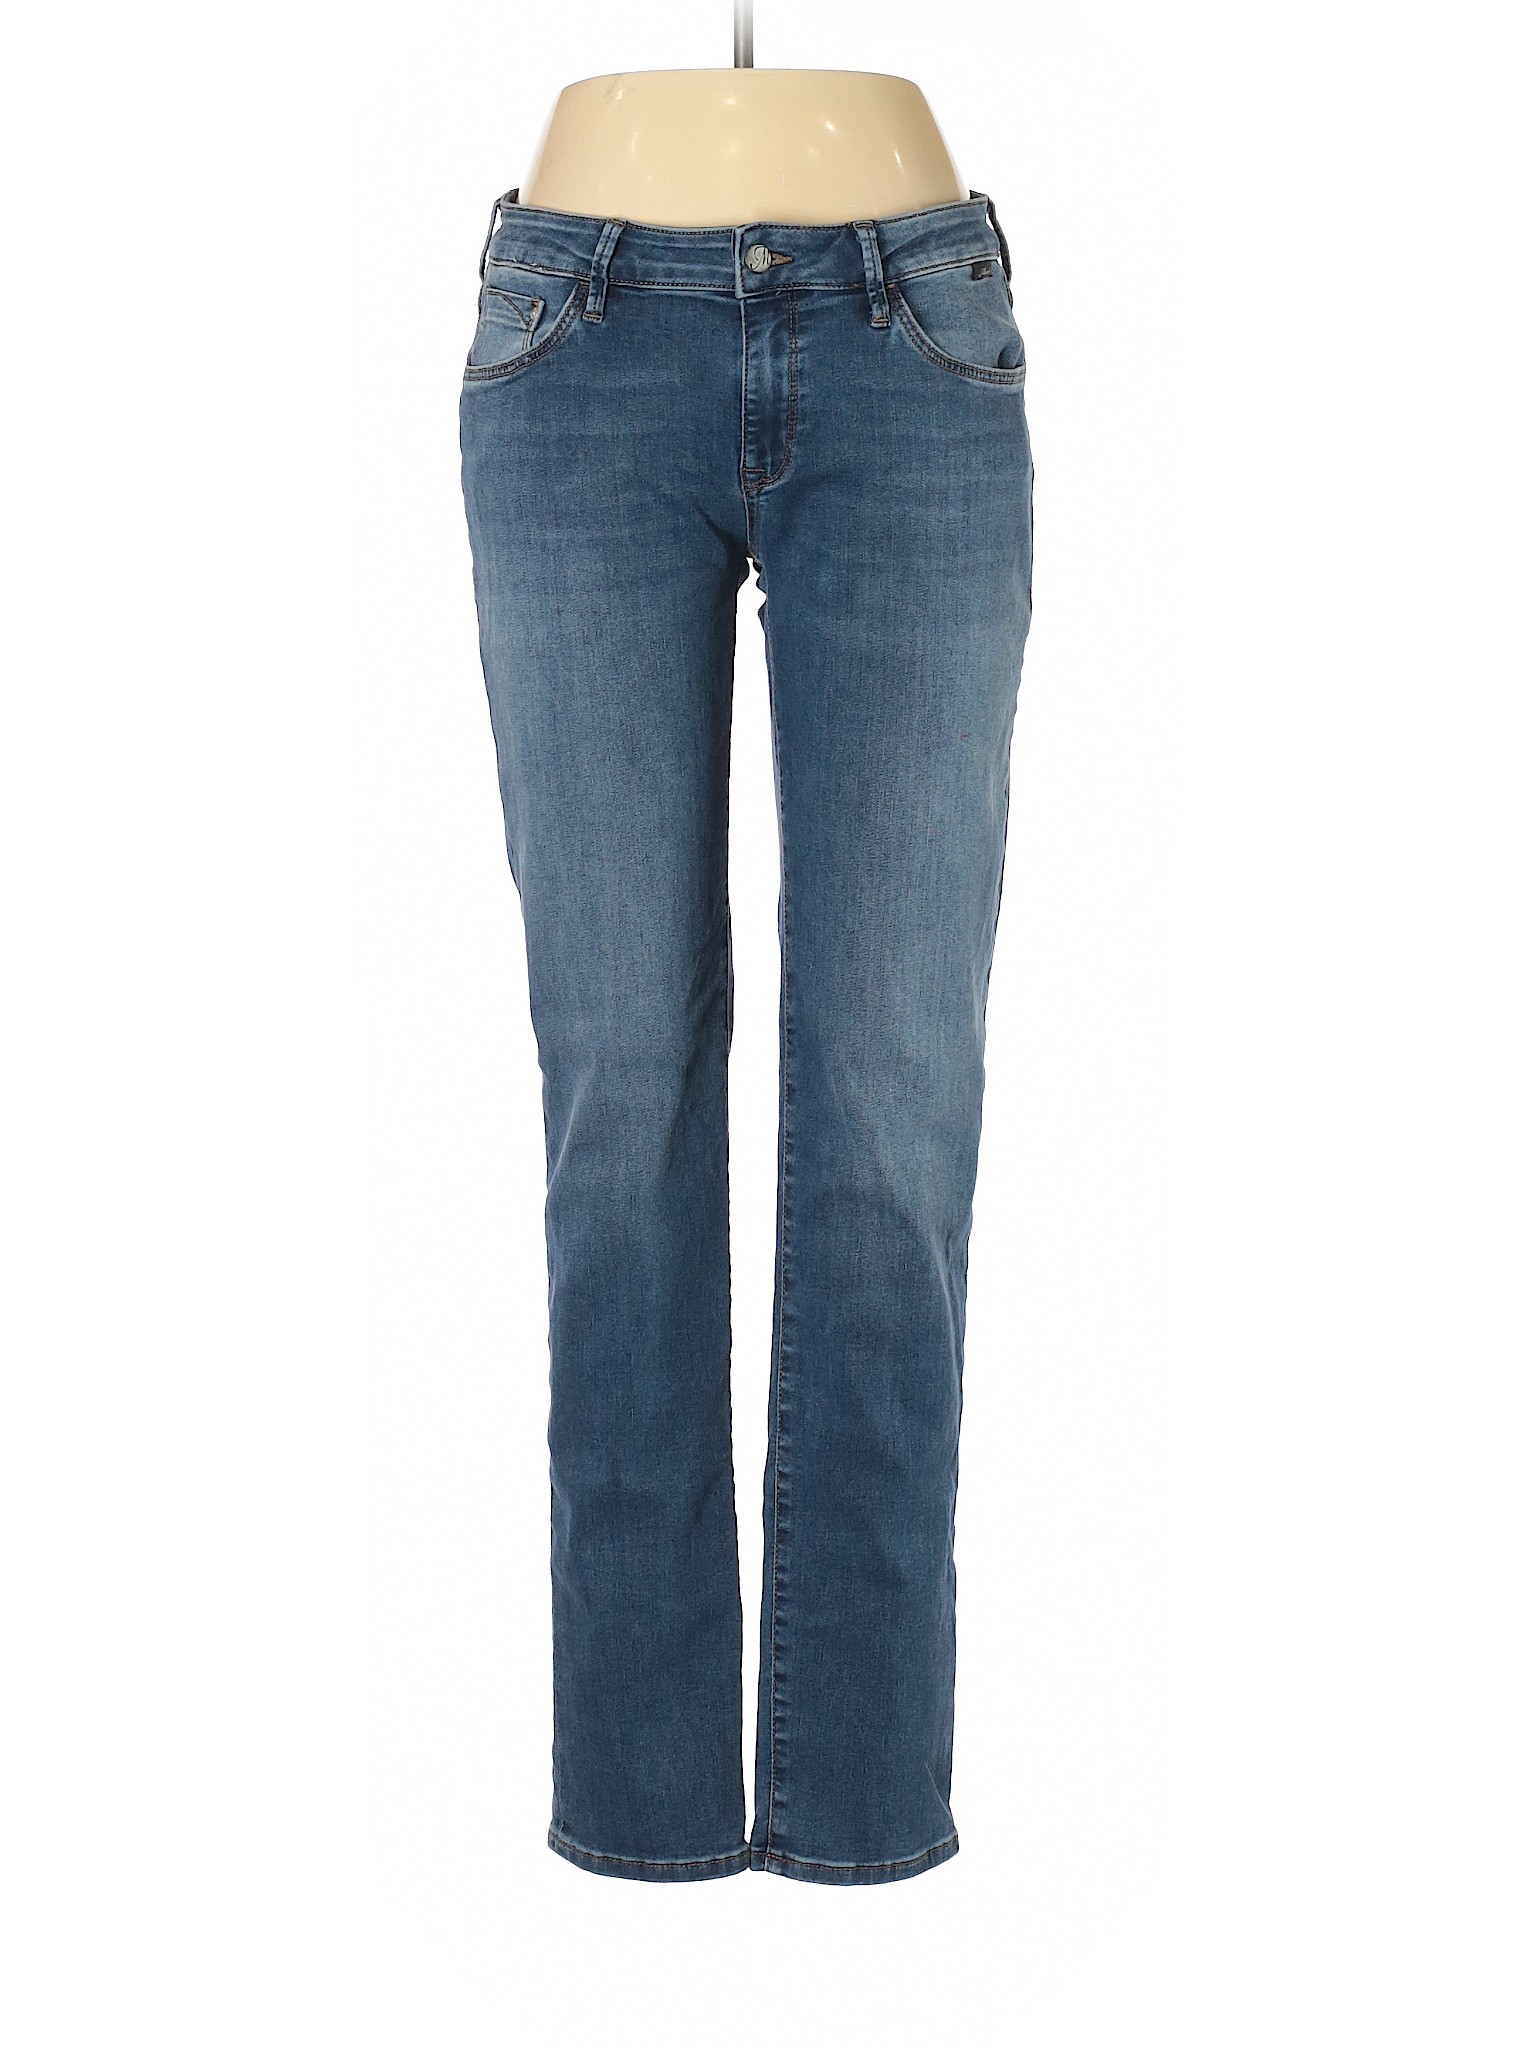 Mavi Jeans Women Blue Jeans 30W | eBay